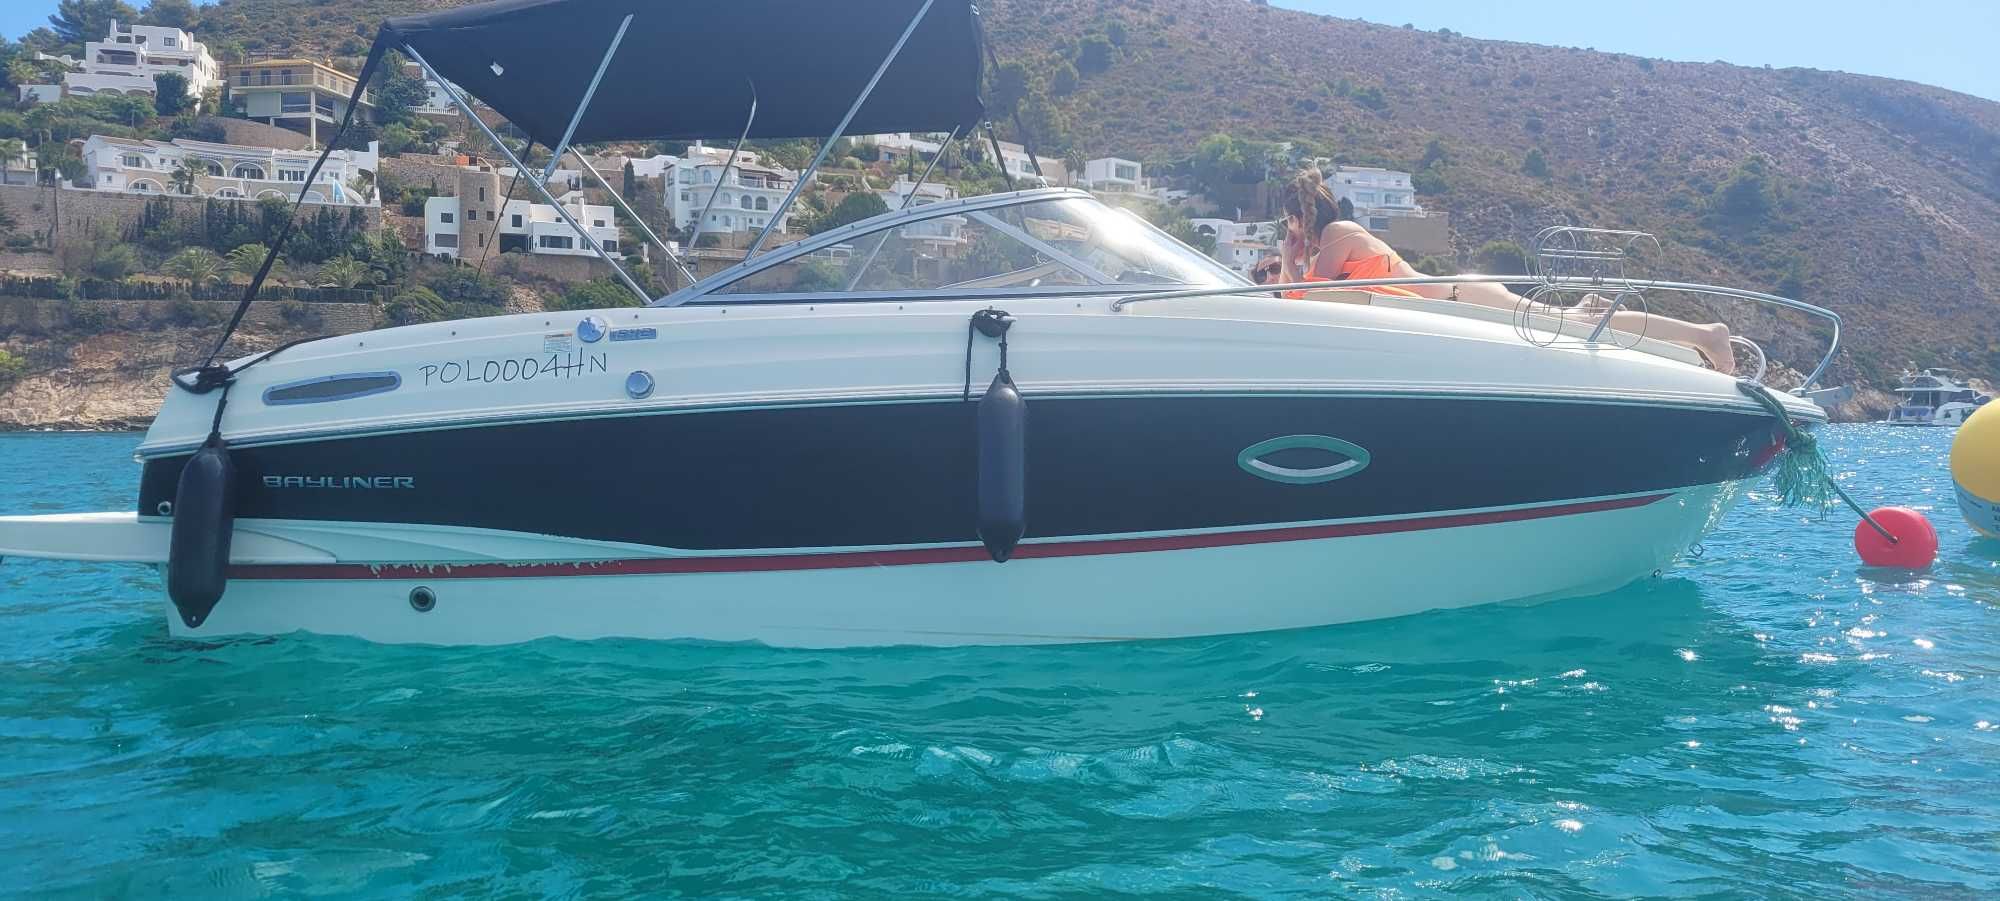 2016 BAYLINER 642 CUDDY łódz motorowa jacht motorowy motorówka FV